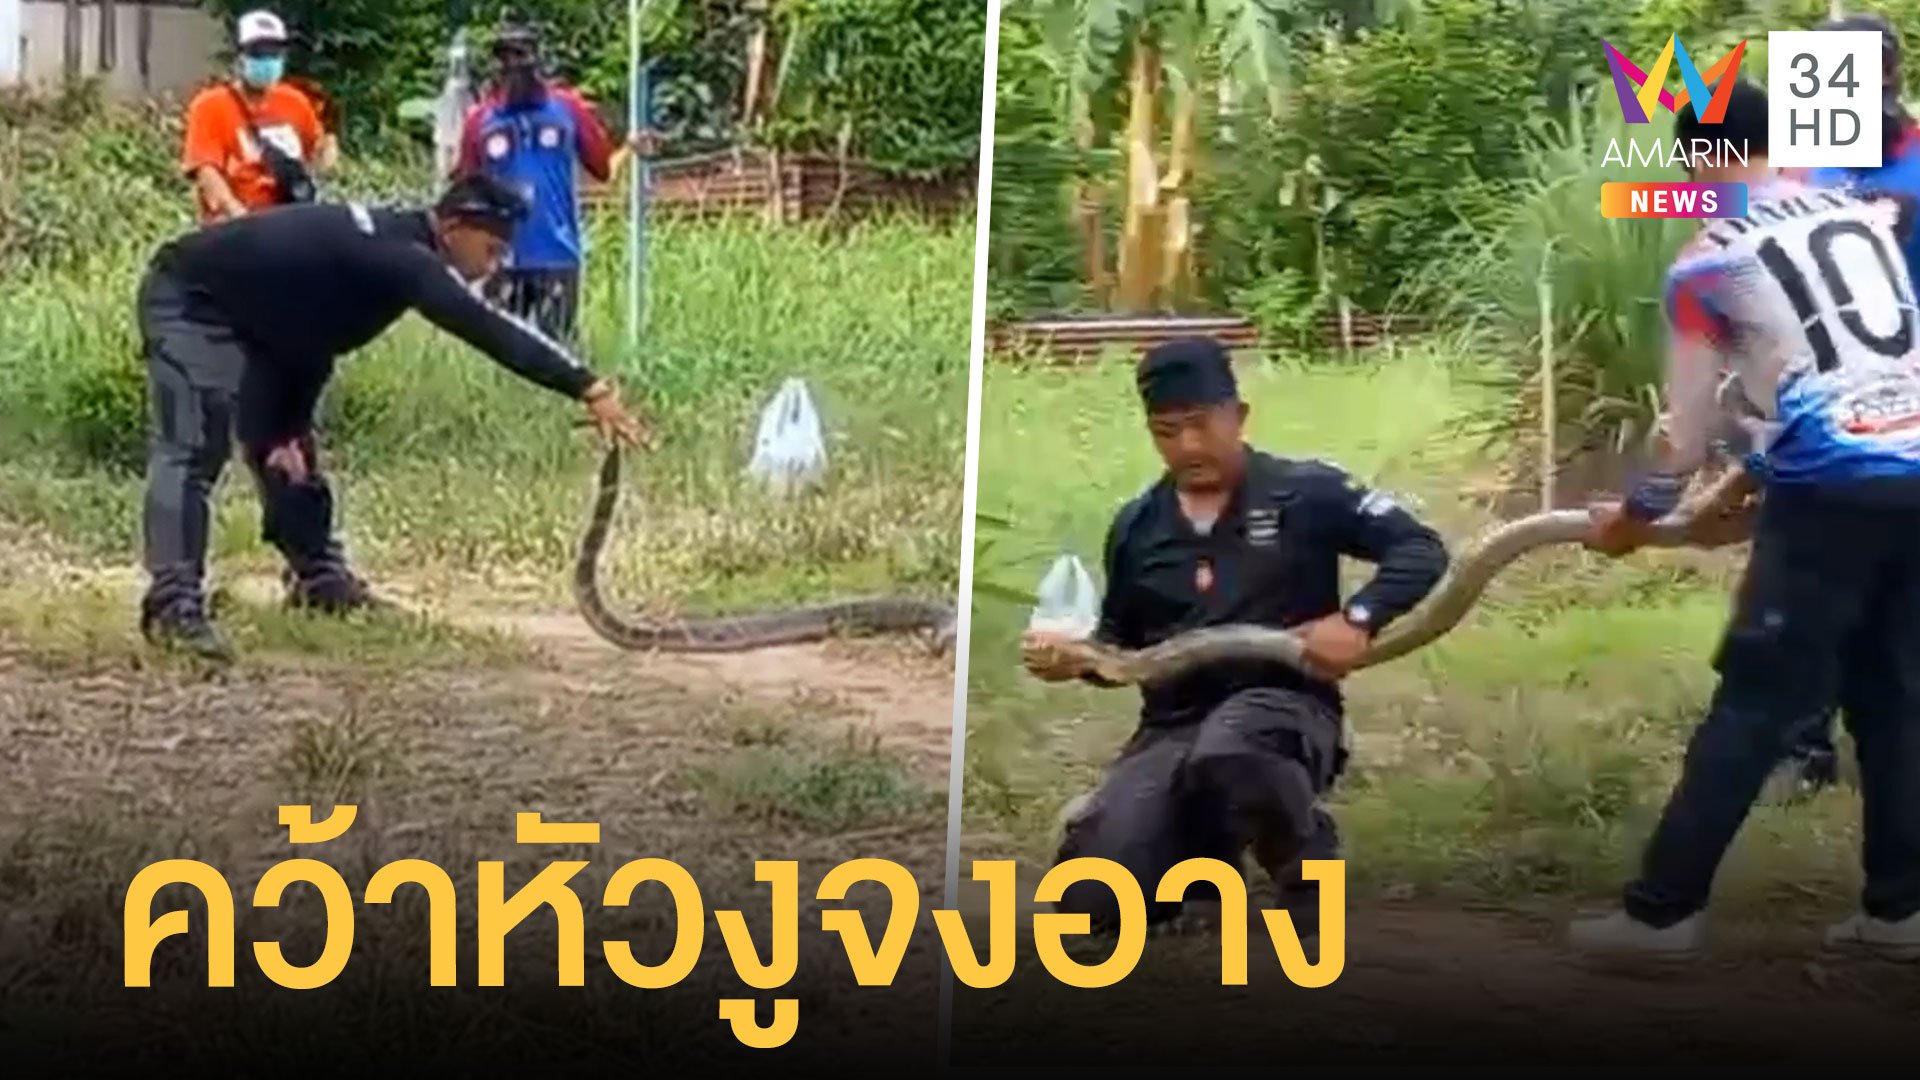 กู้ภัยคว้าหมับหัวงูจงอางยาวเกือบ 4 เมตร ด้วยมือเปล่า | ข่าวอรุณอมรินทร์ | 30 พ.ค. 65 | AMARIN TVHD34